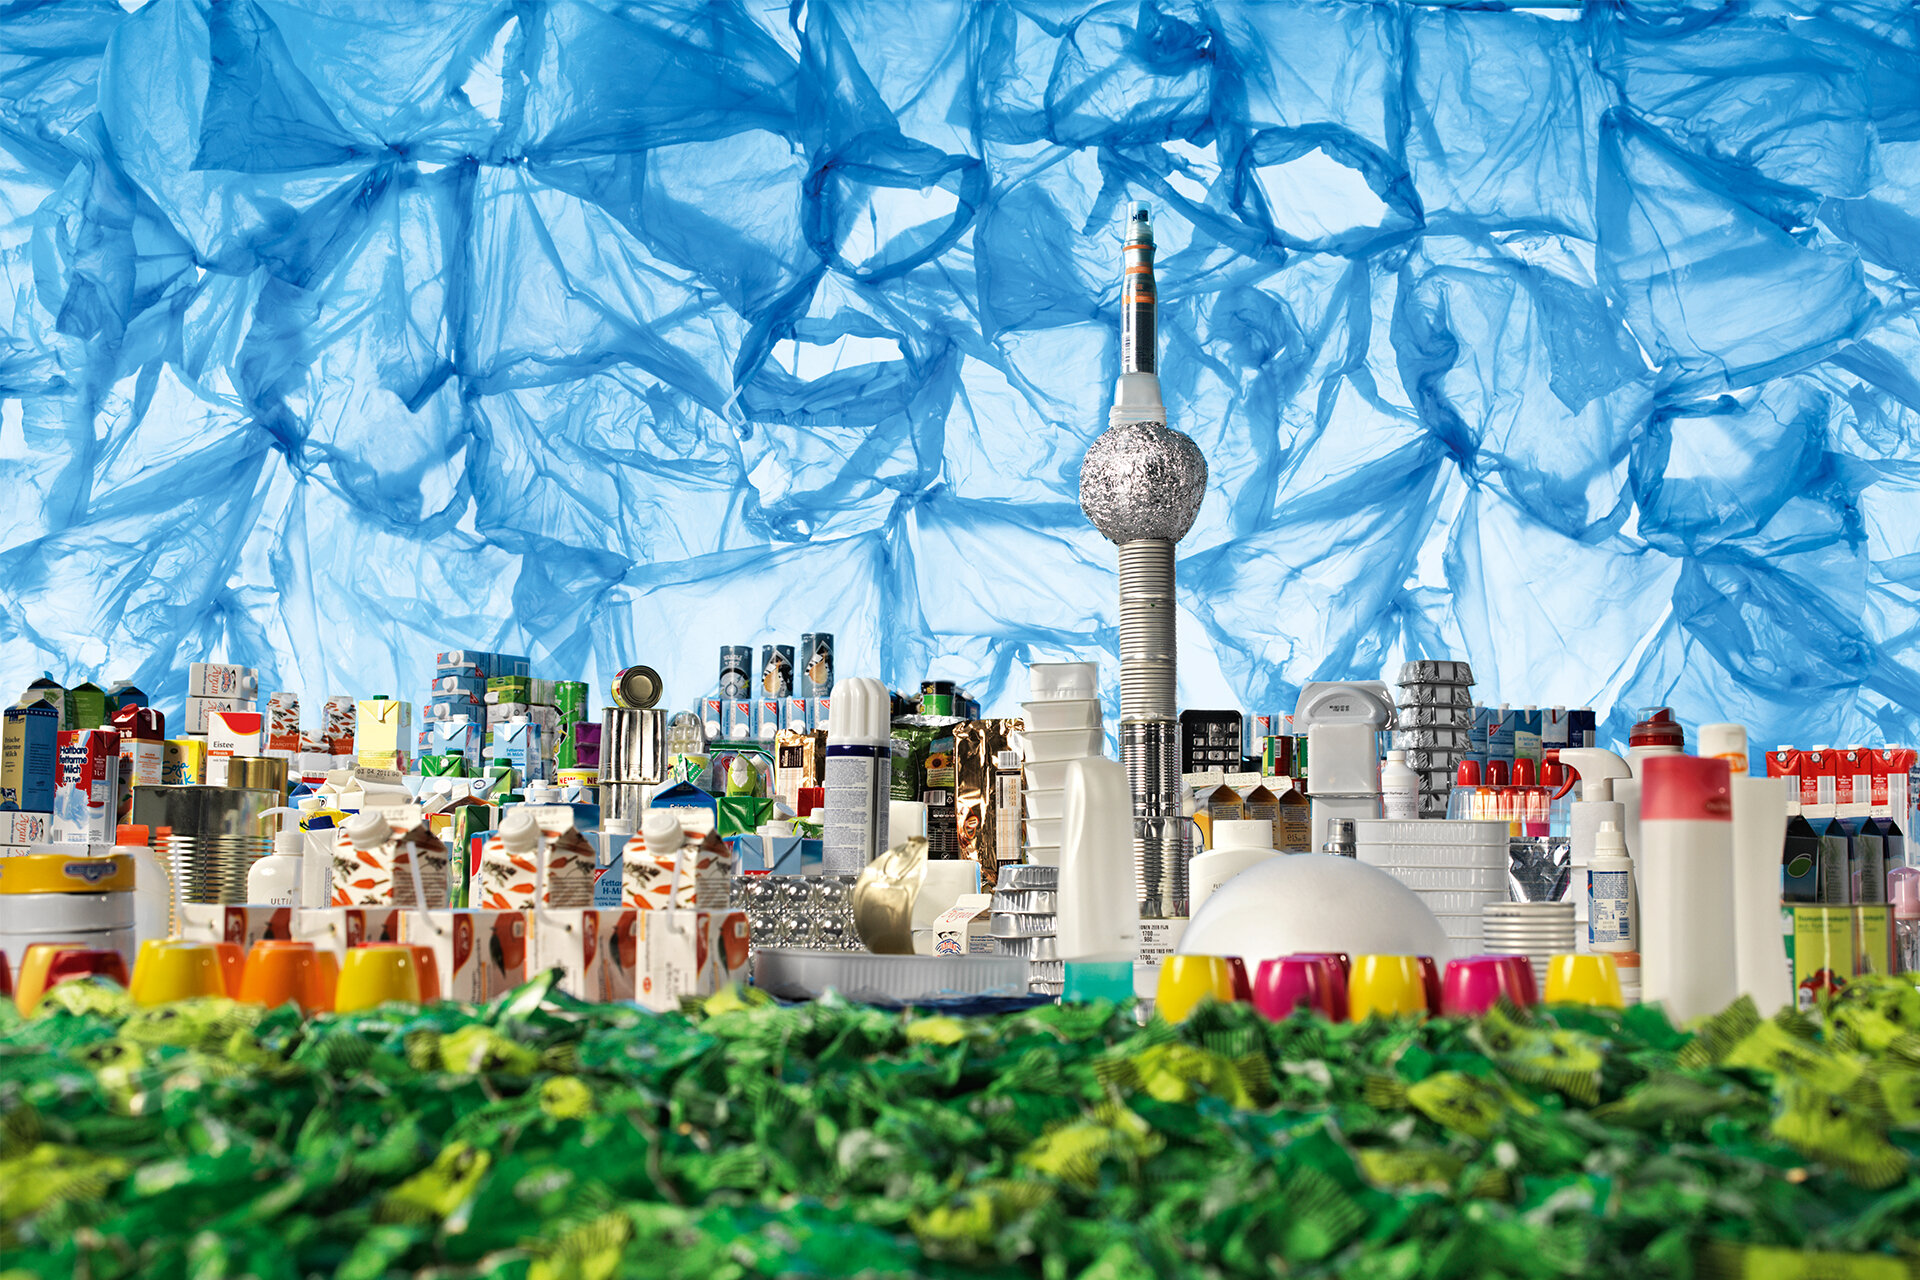 Die Berliner Skyline wird künstlerisch mit buntem Müll inszeniert: Blaue Plastikfolie für den Himmel, Trinkpäckchen, Alufolien und diverser Plastikmüll für die Häuser und den Fernsehturm, grüne Bonbonpapiere für die Grünflächen im Vordergrund.